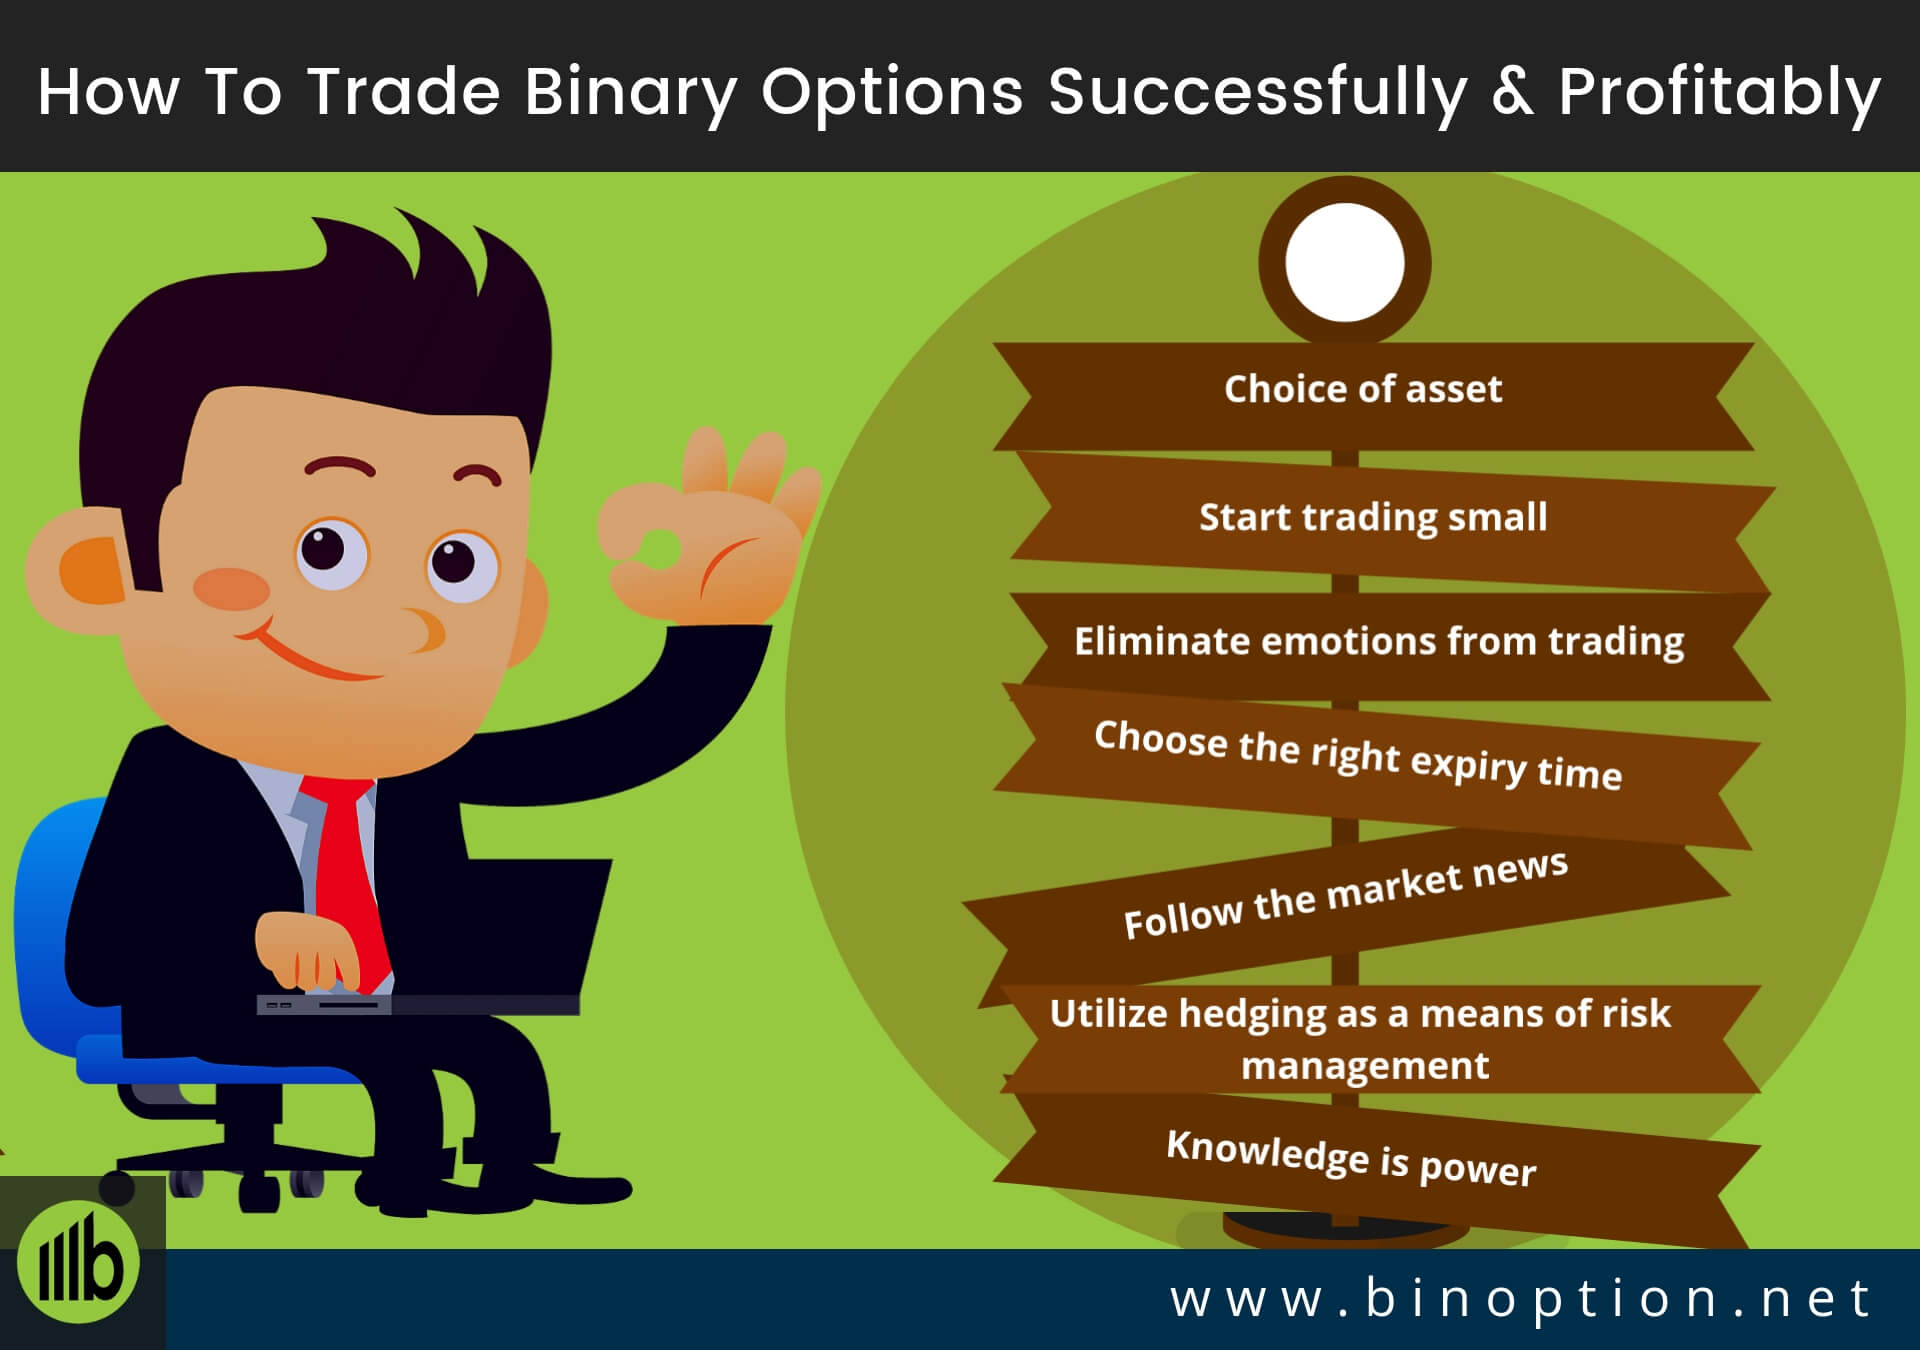 How to trade binary options profitably